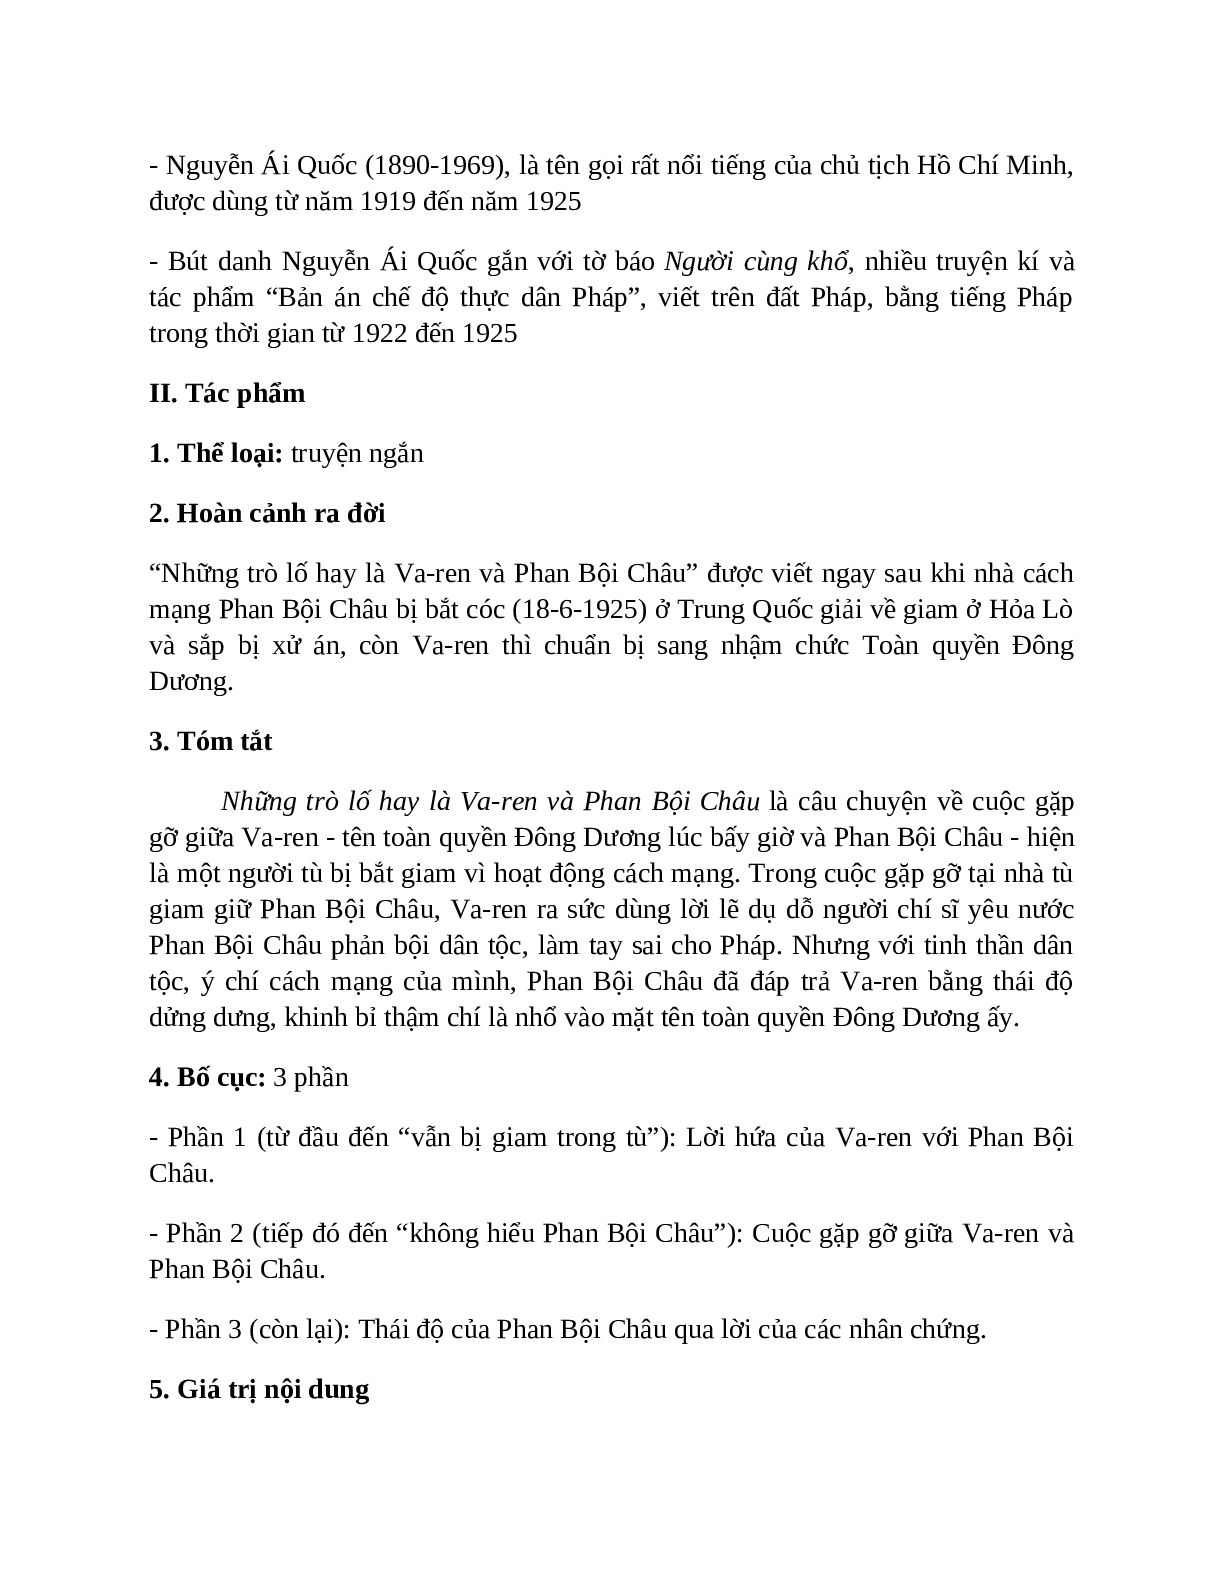 Sơ đồ tư duy bài Những trò lố hay là Varen và Phan Bội Châu dễ nhớ, ngắn nhất - Ngữ văn lớp 7 (trang 2)